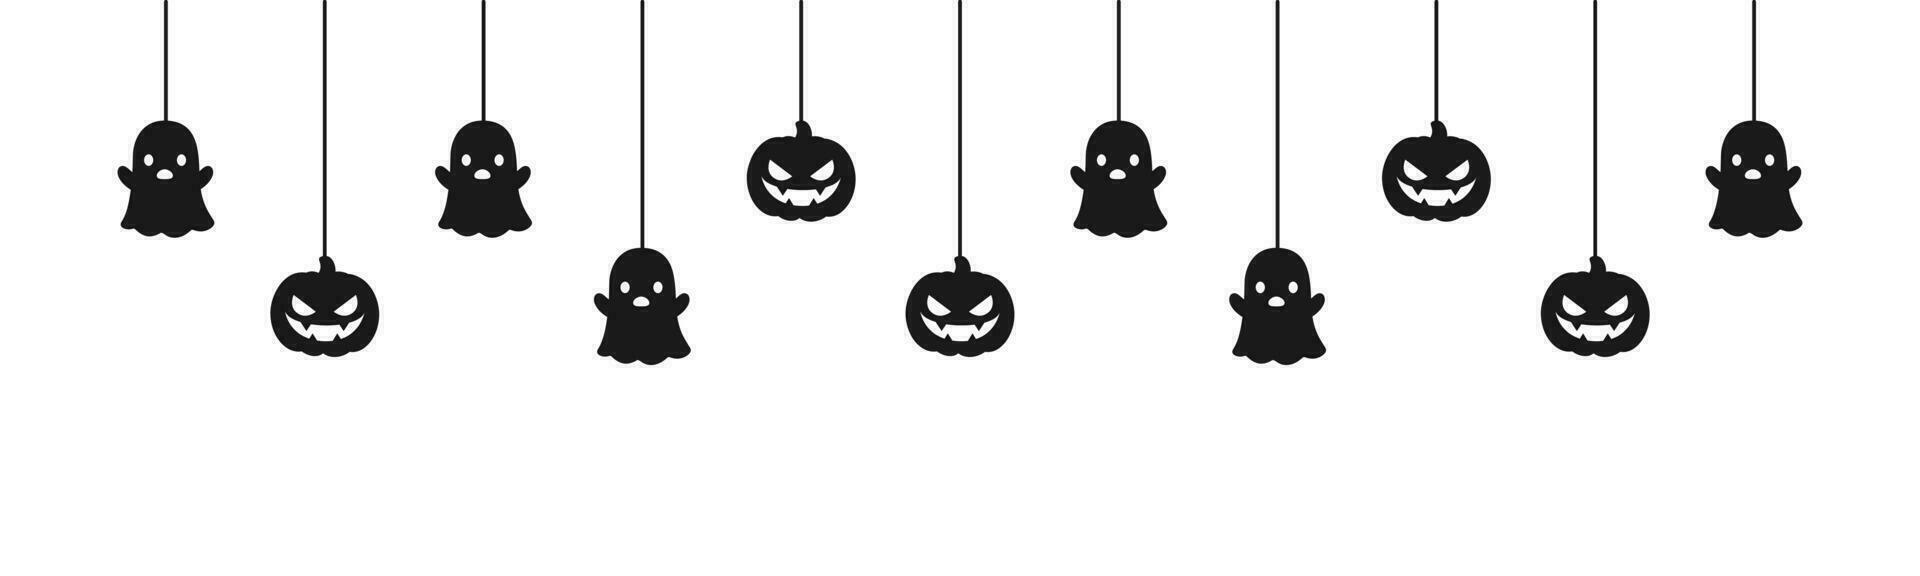 gelukkig halloween banier of grens met zwart geest en jack O lantaarn pompoenen. hangende spookachtig ornamenten decoratie vector illustratie, truc of traktatie partij uitnodiging